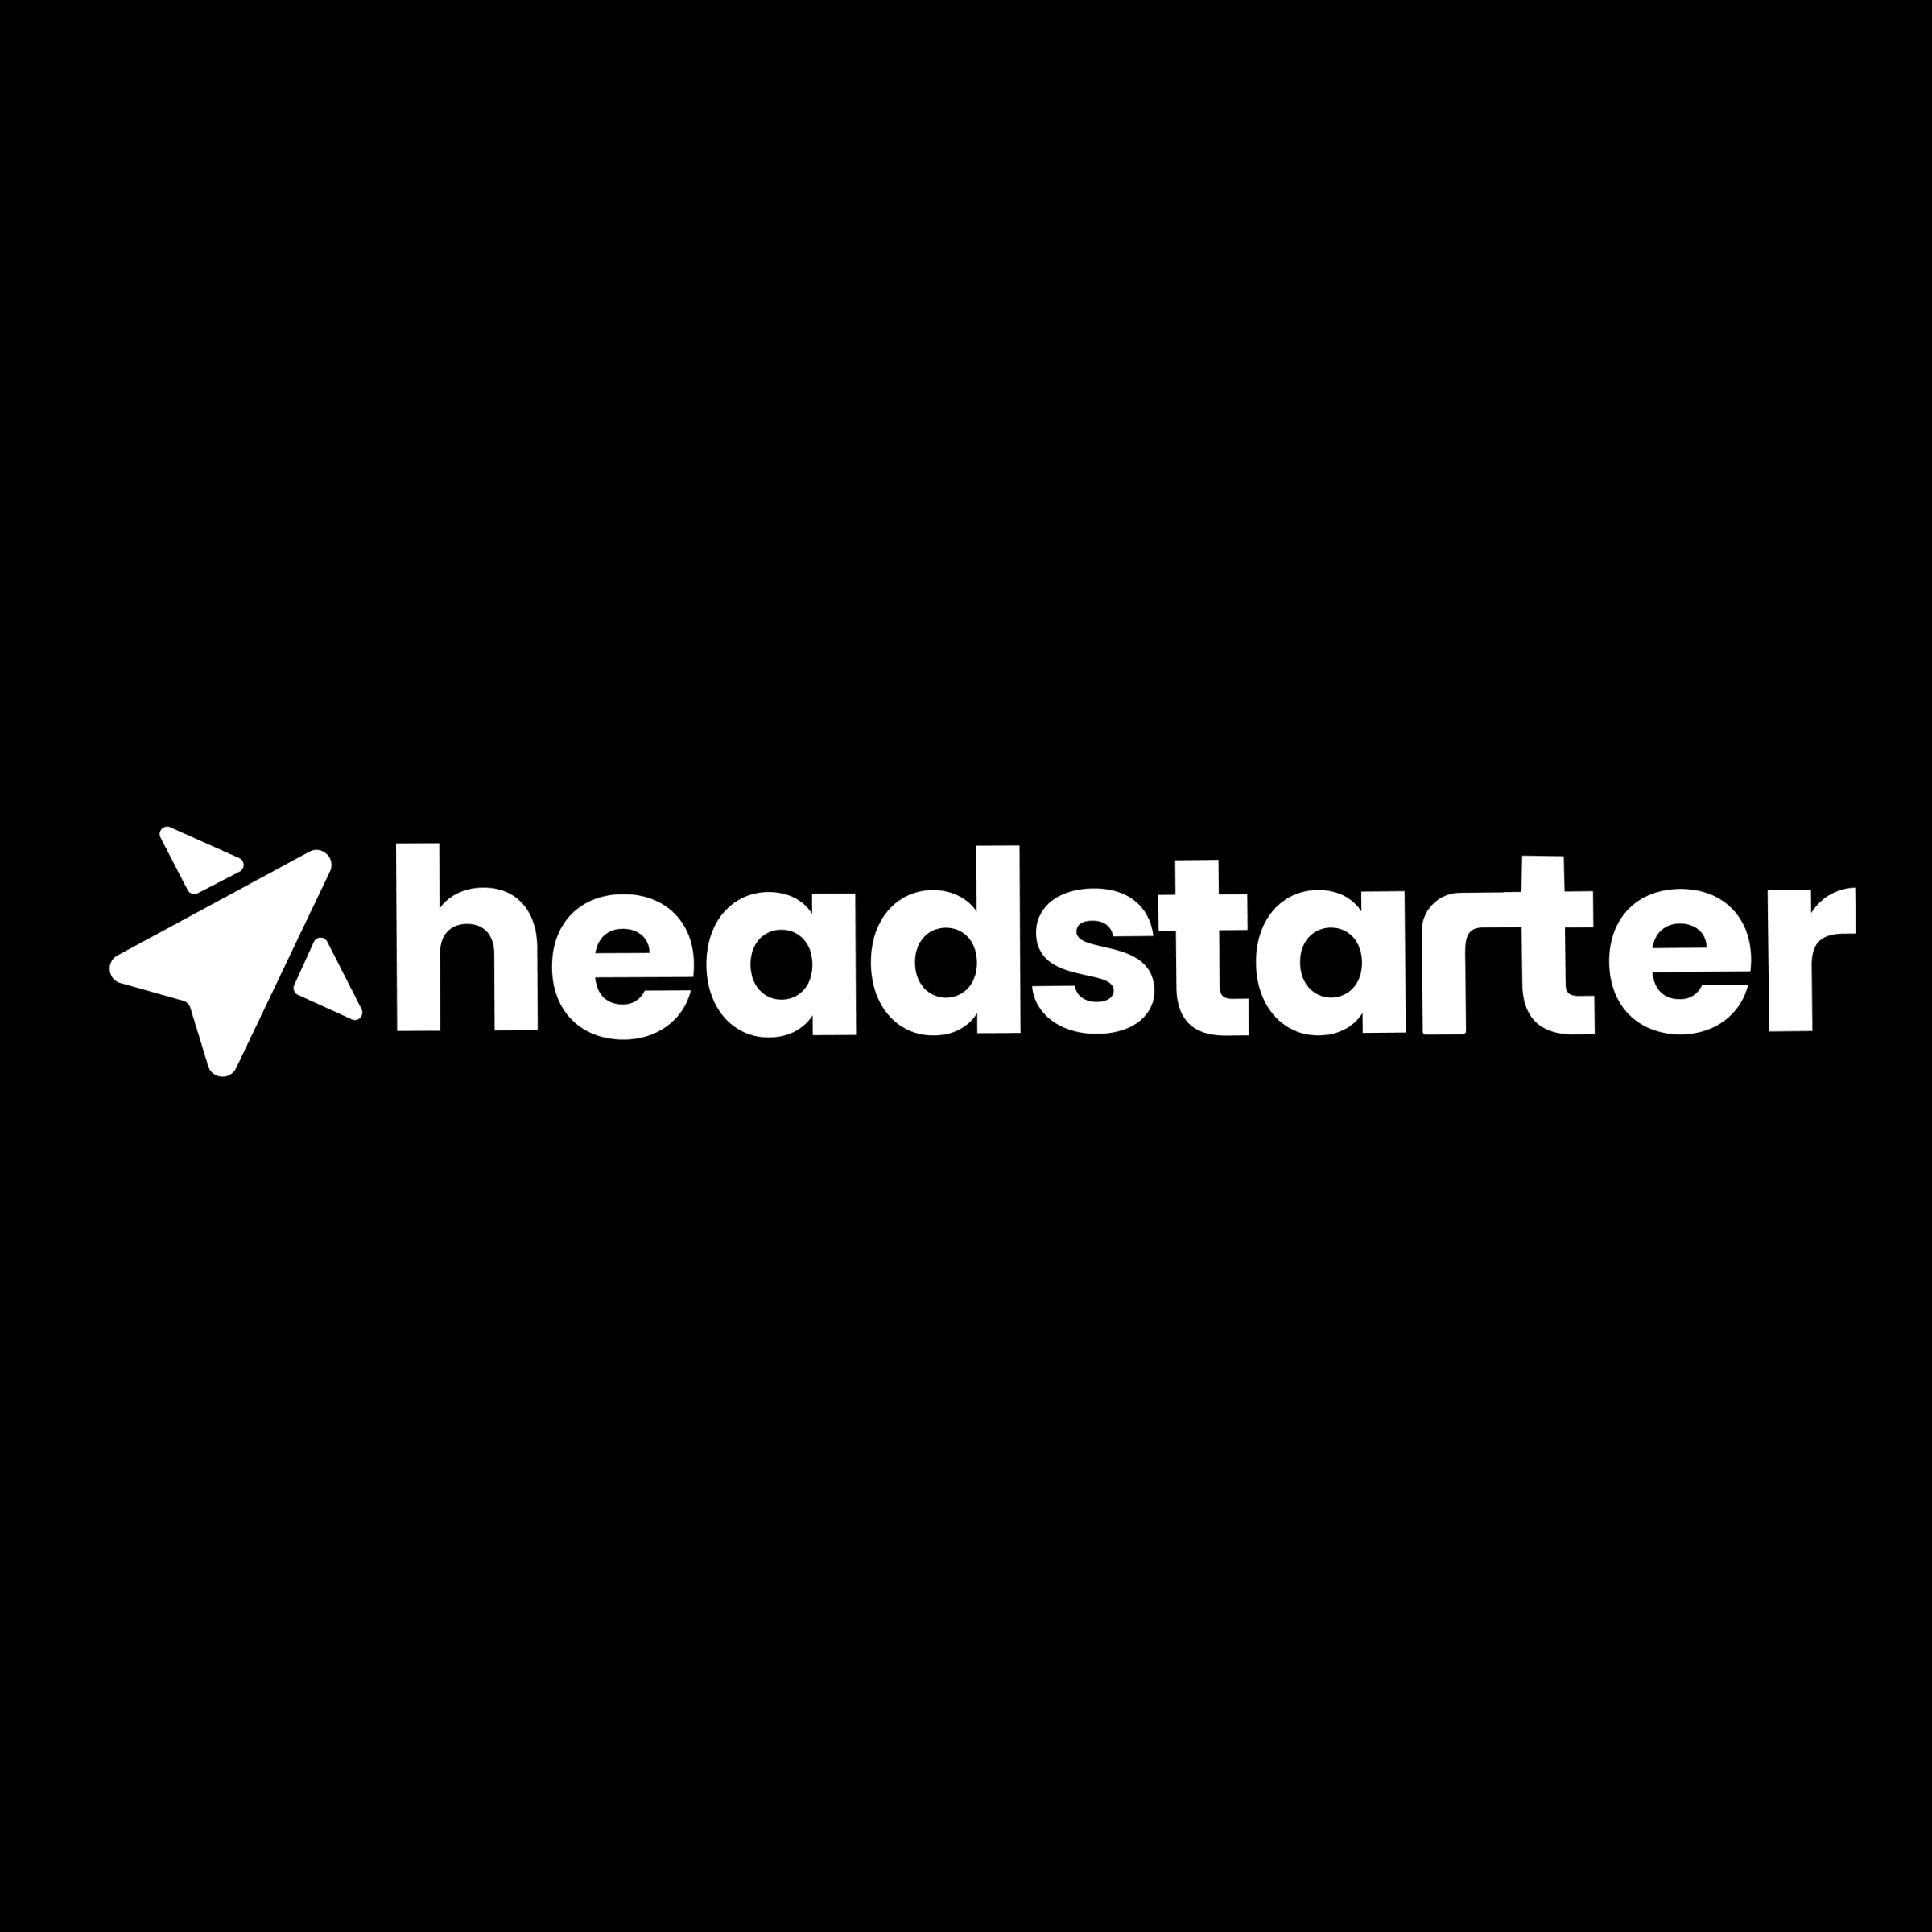 Headstarter